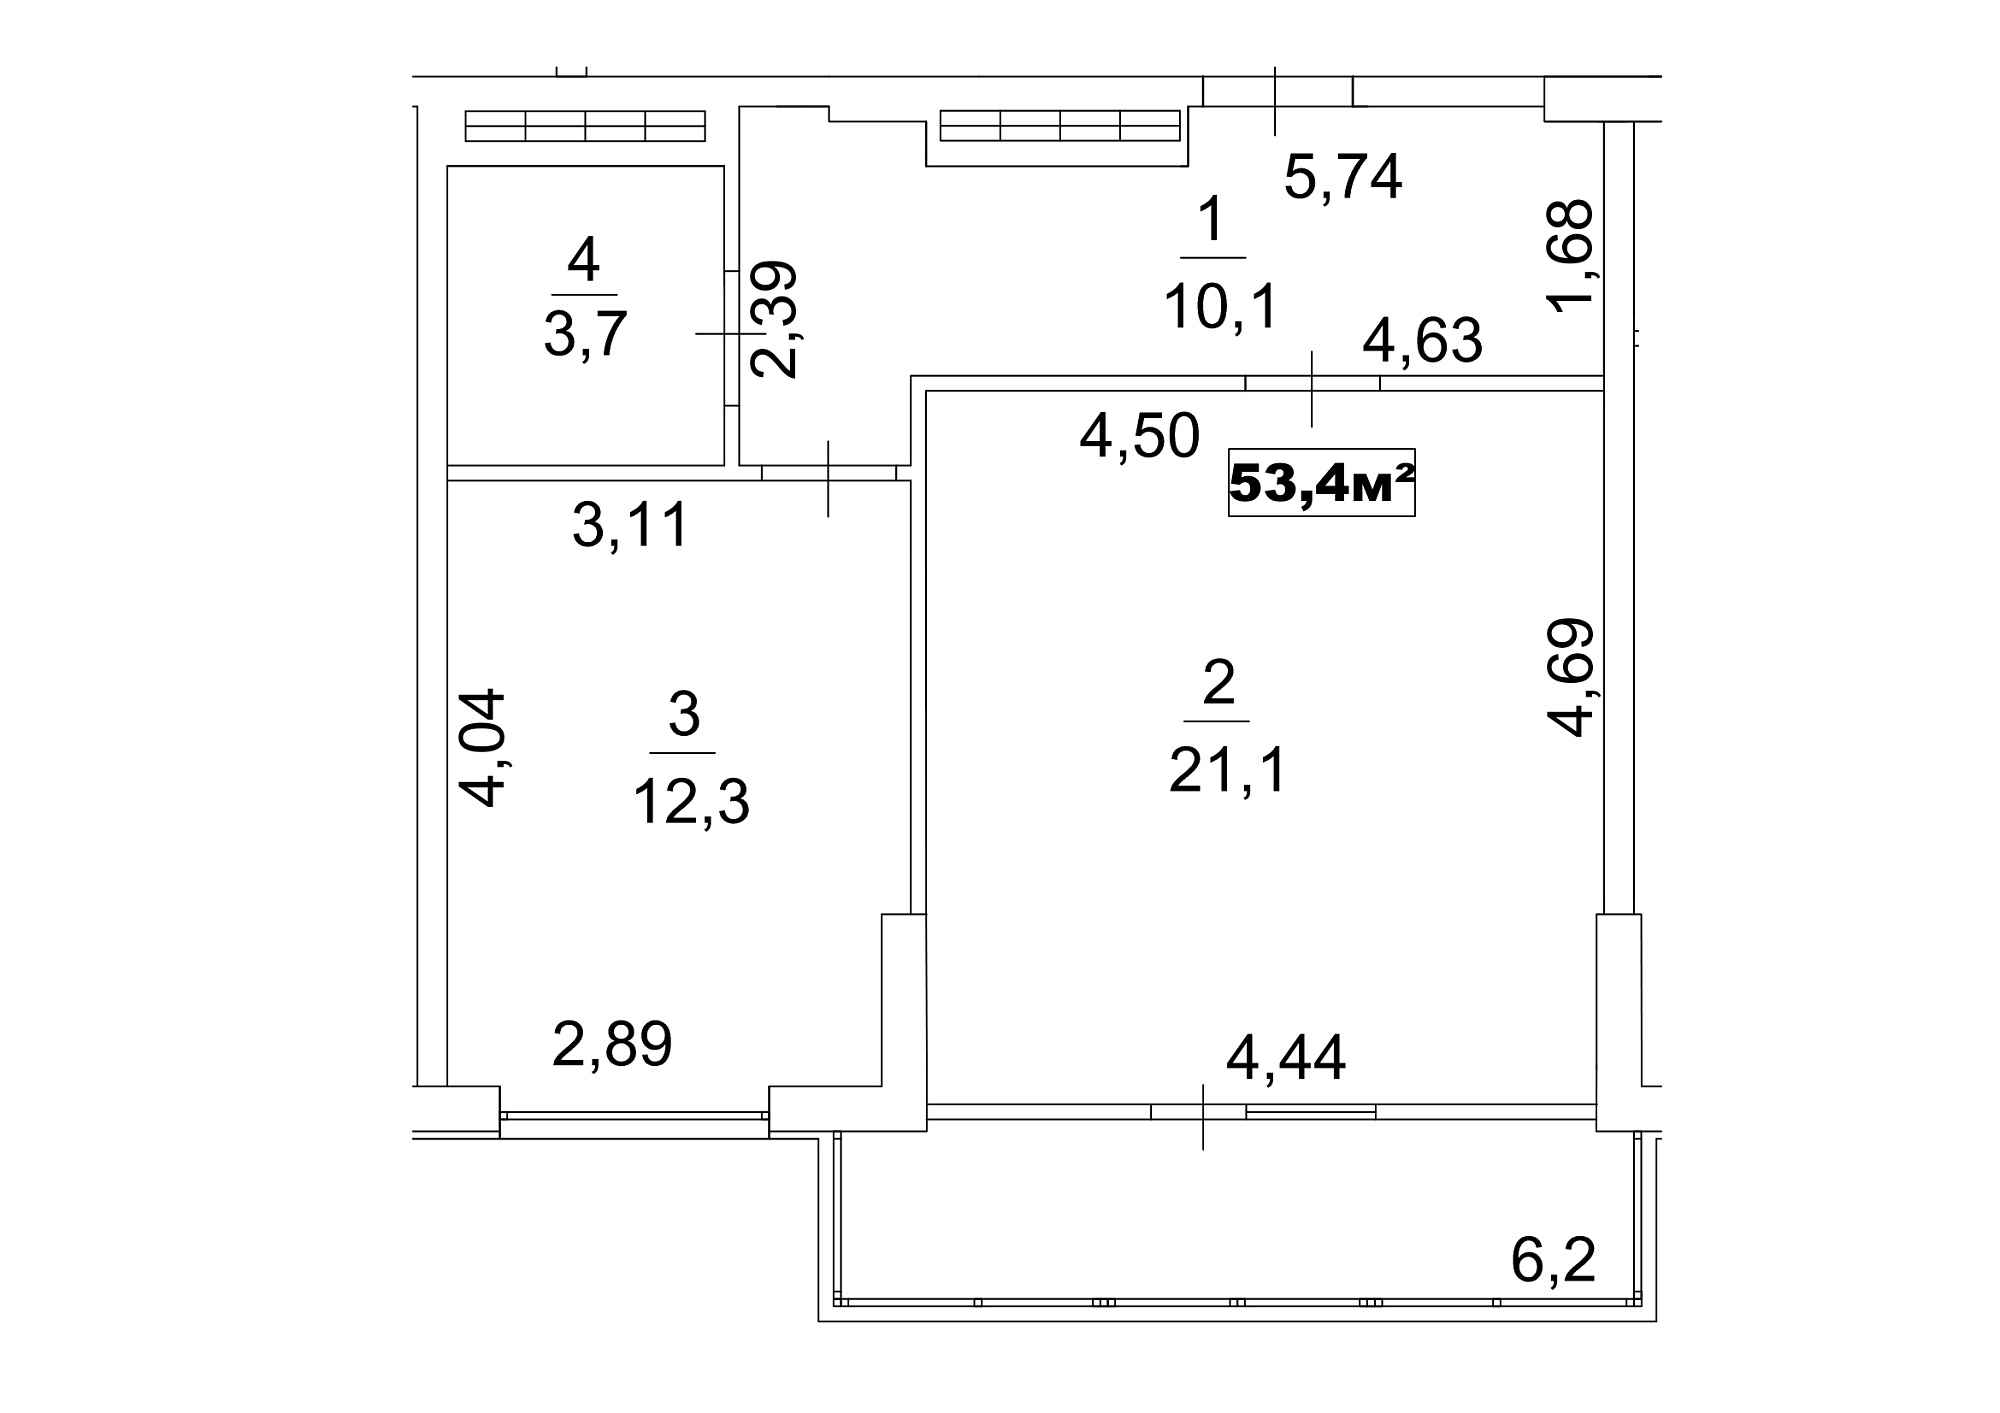 Планировка 1-к квартира площей 53.4м2, AB-13-01/00002.